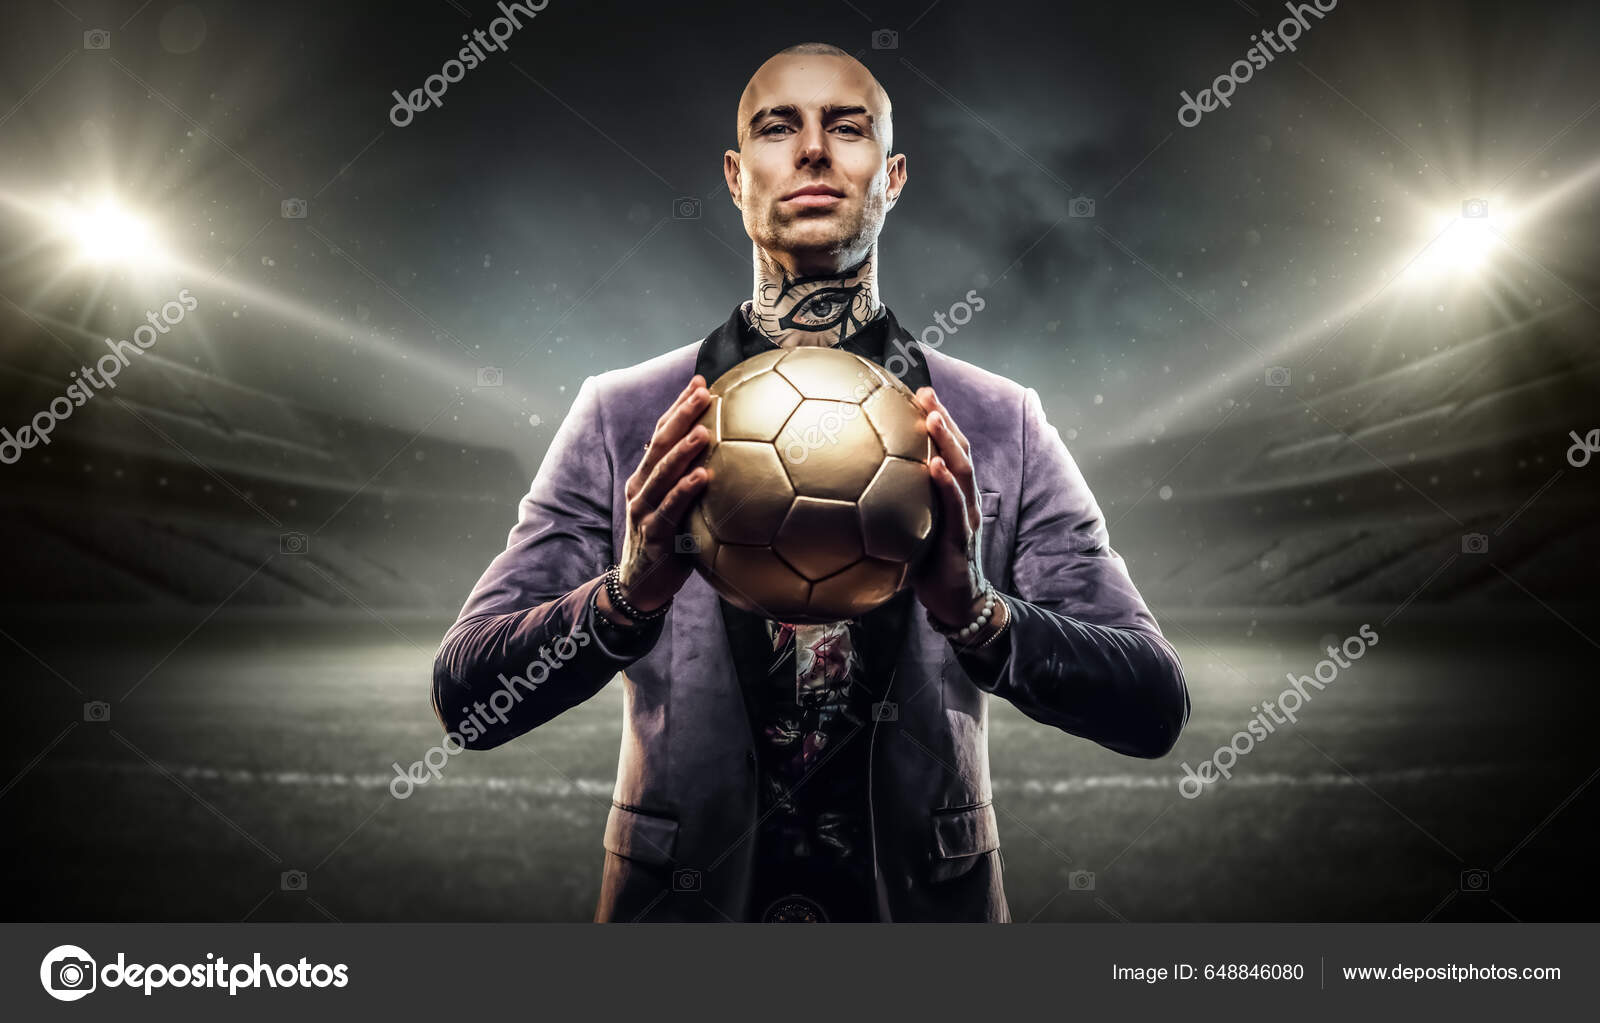 Imagem gratuita: Campeonato, jogador de futebol, futebol, bola de futebol,  jogo, jogador, concorrência, bola, futebol, jogo